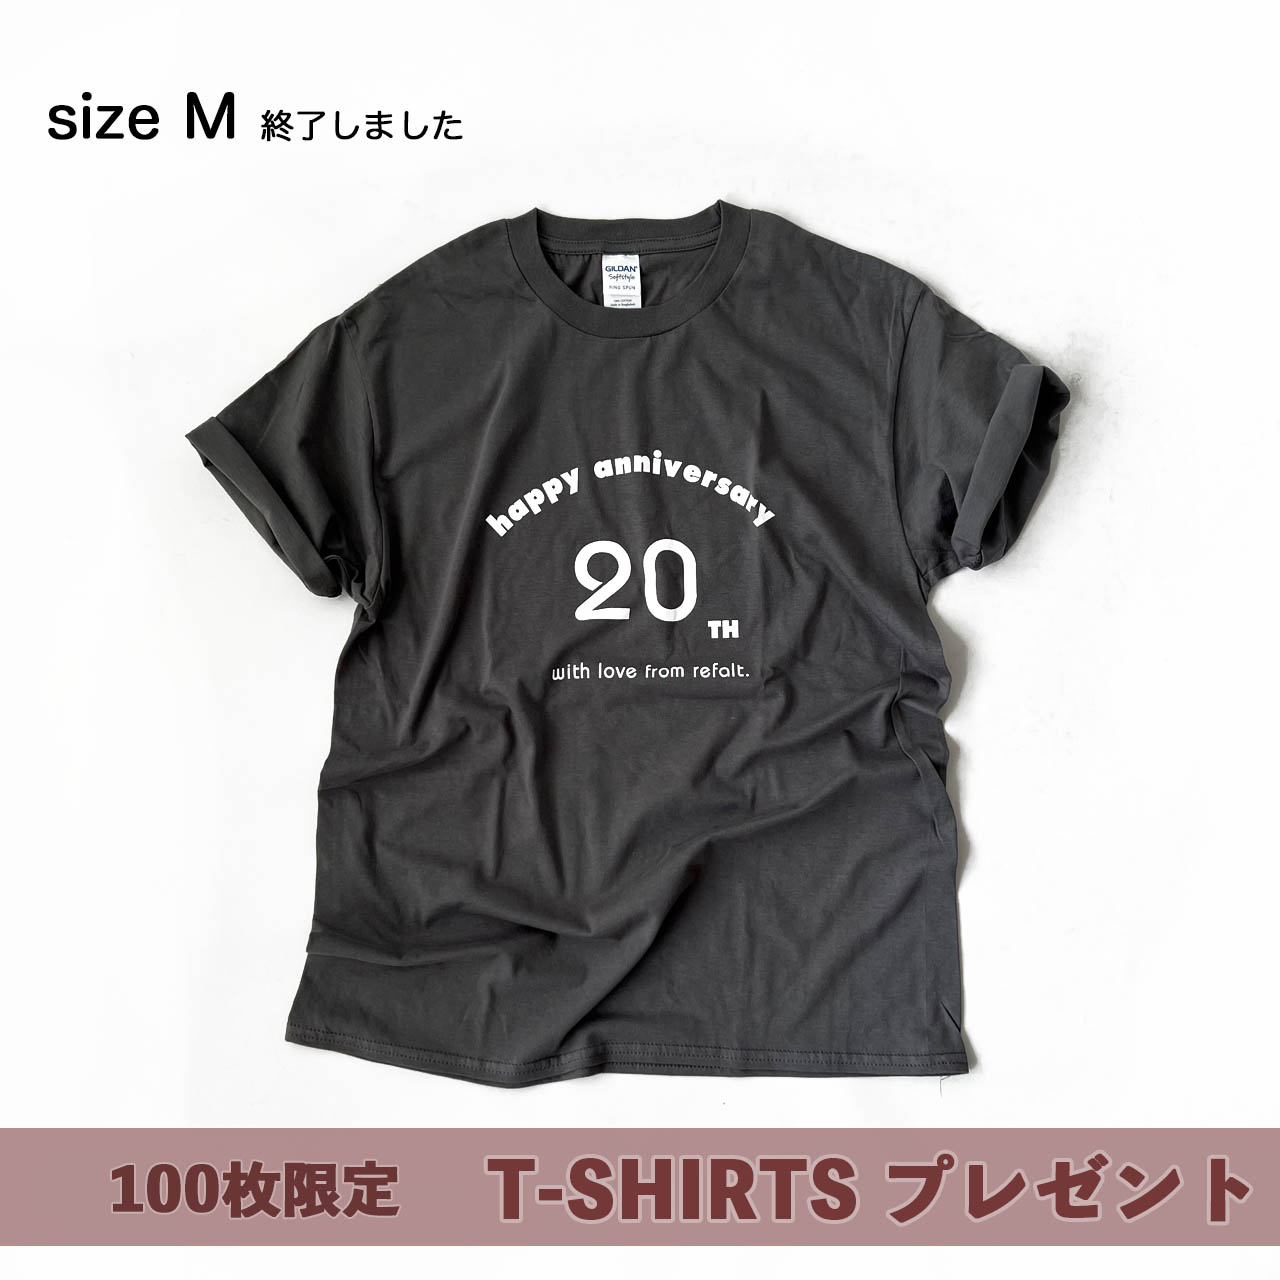 100枚限定オリジナルTシャツプレゼント！20周年記念イベント